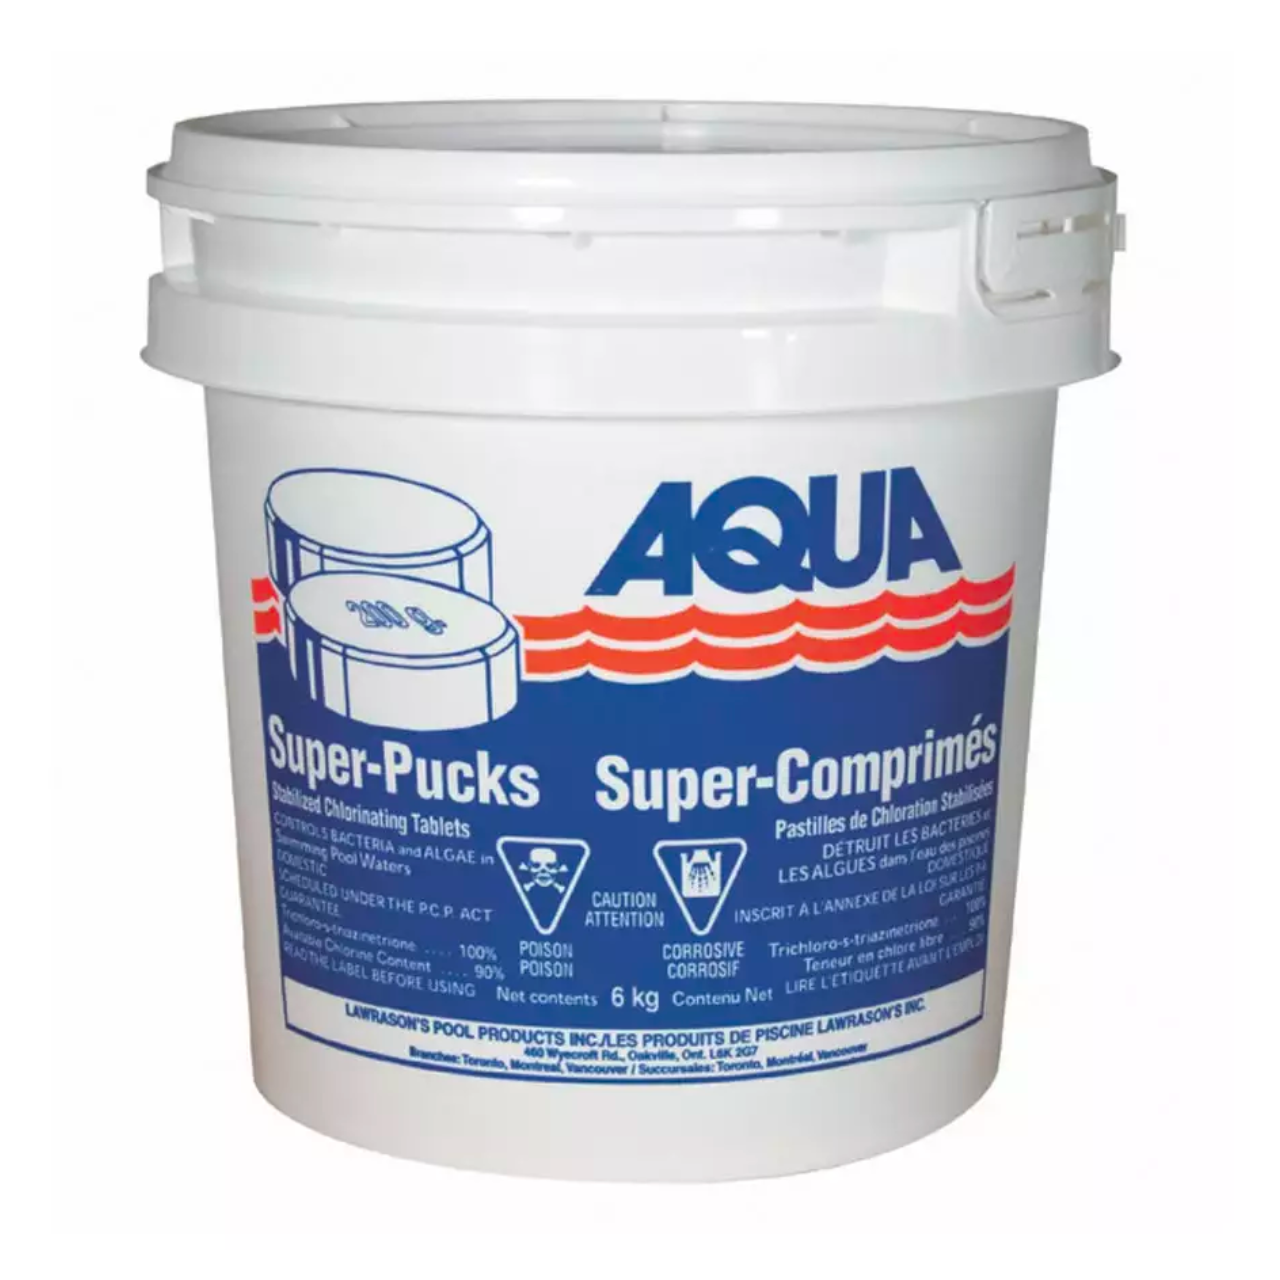 Aqua Super Pucks - Stabilized Chlorinating Tablets 200g